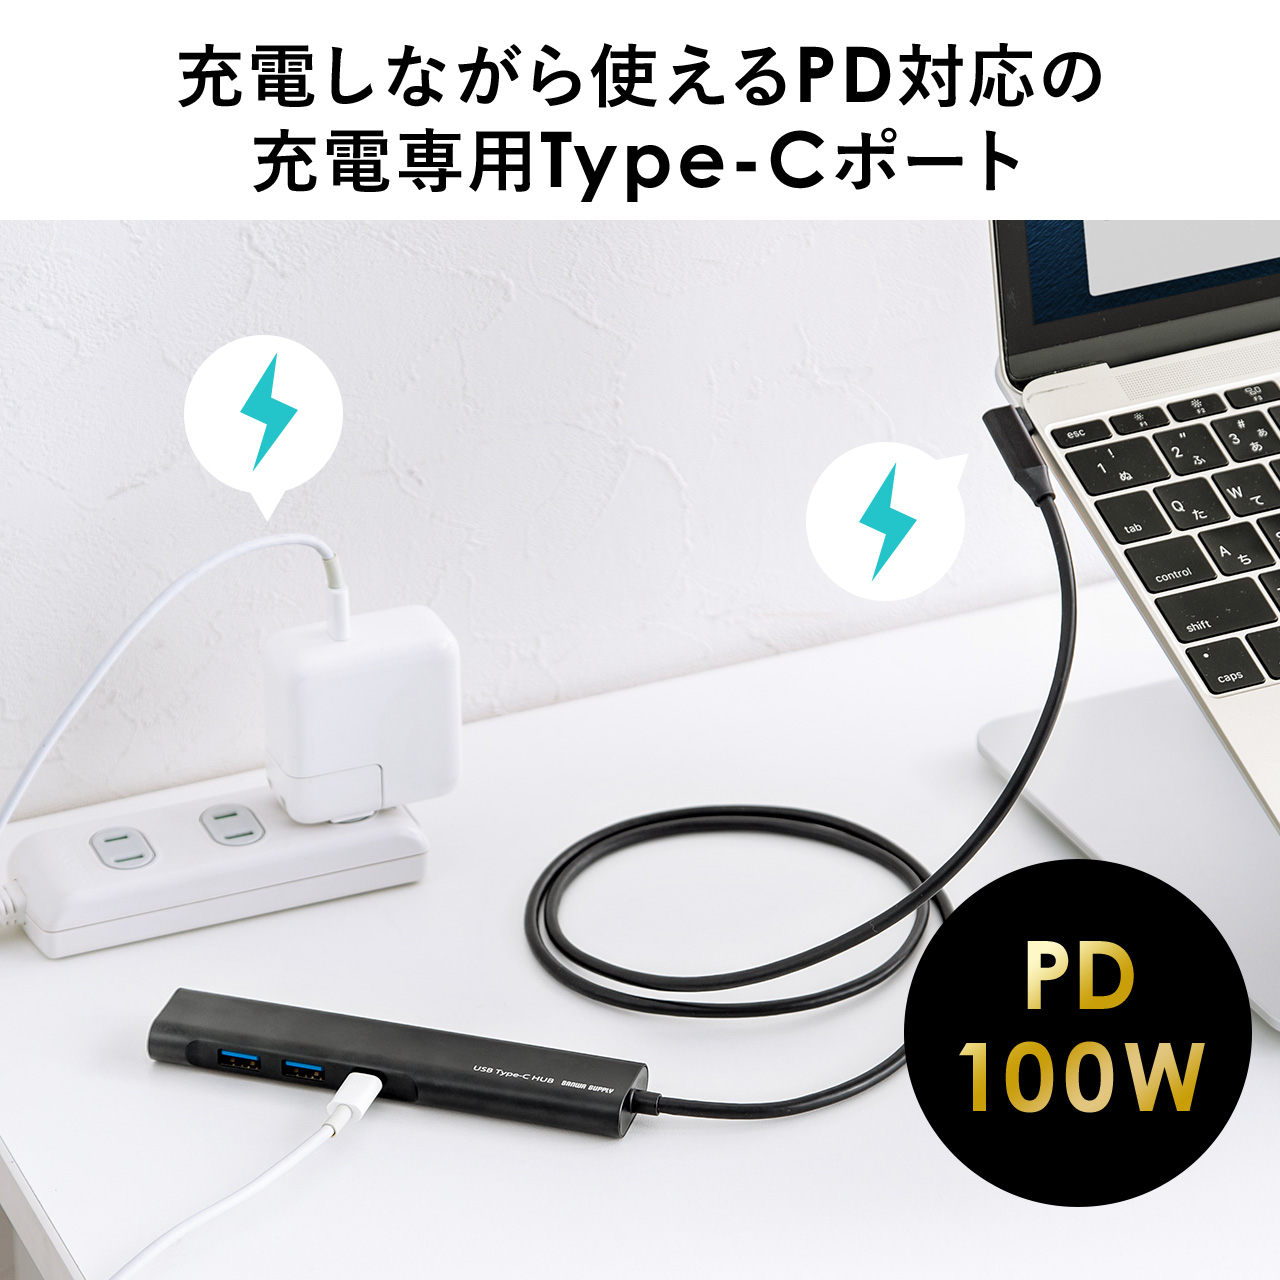 ドッキングステーション USB-C HDMI 4K L字が使いやすい ケーブル長1m  有線LAN対応 モバイルドッキングステーション 400-HUBC8BK